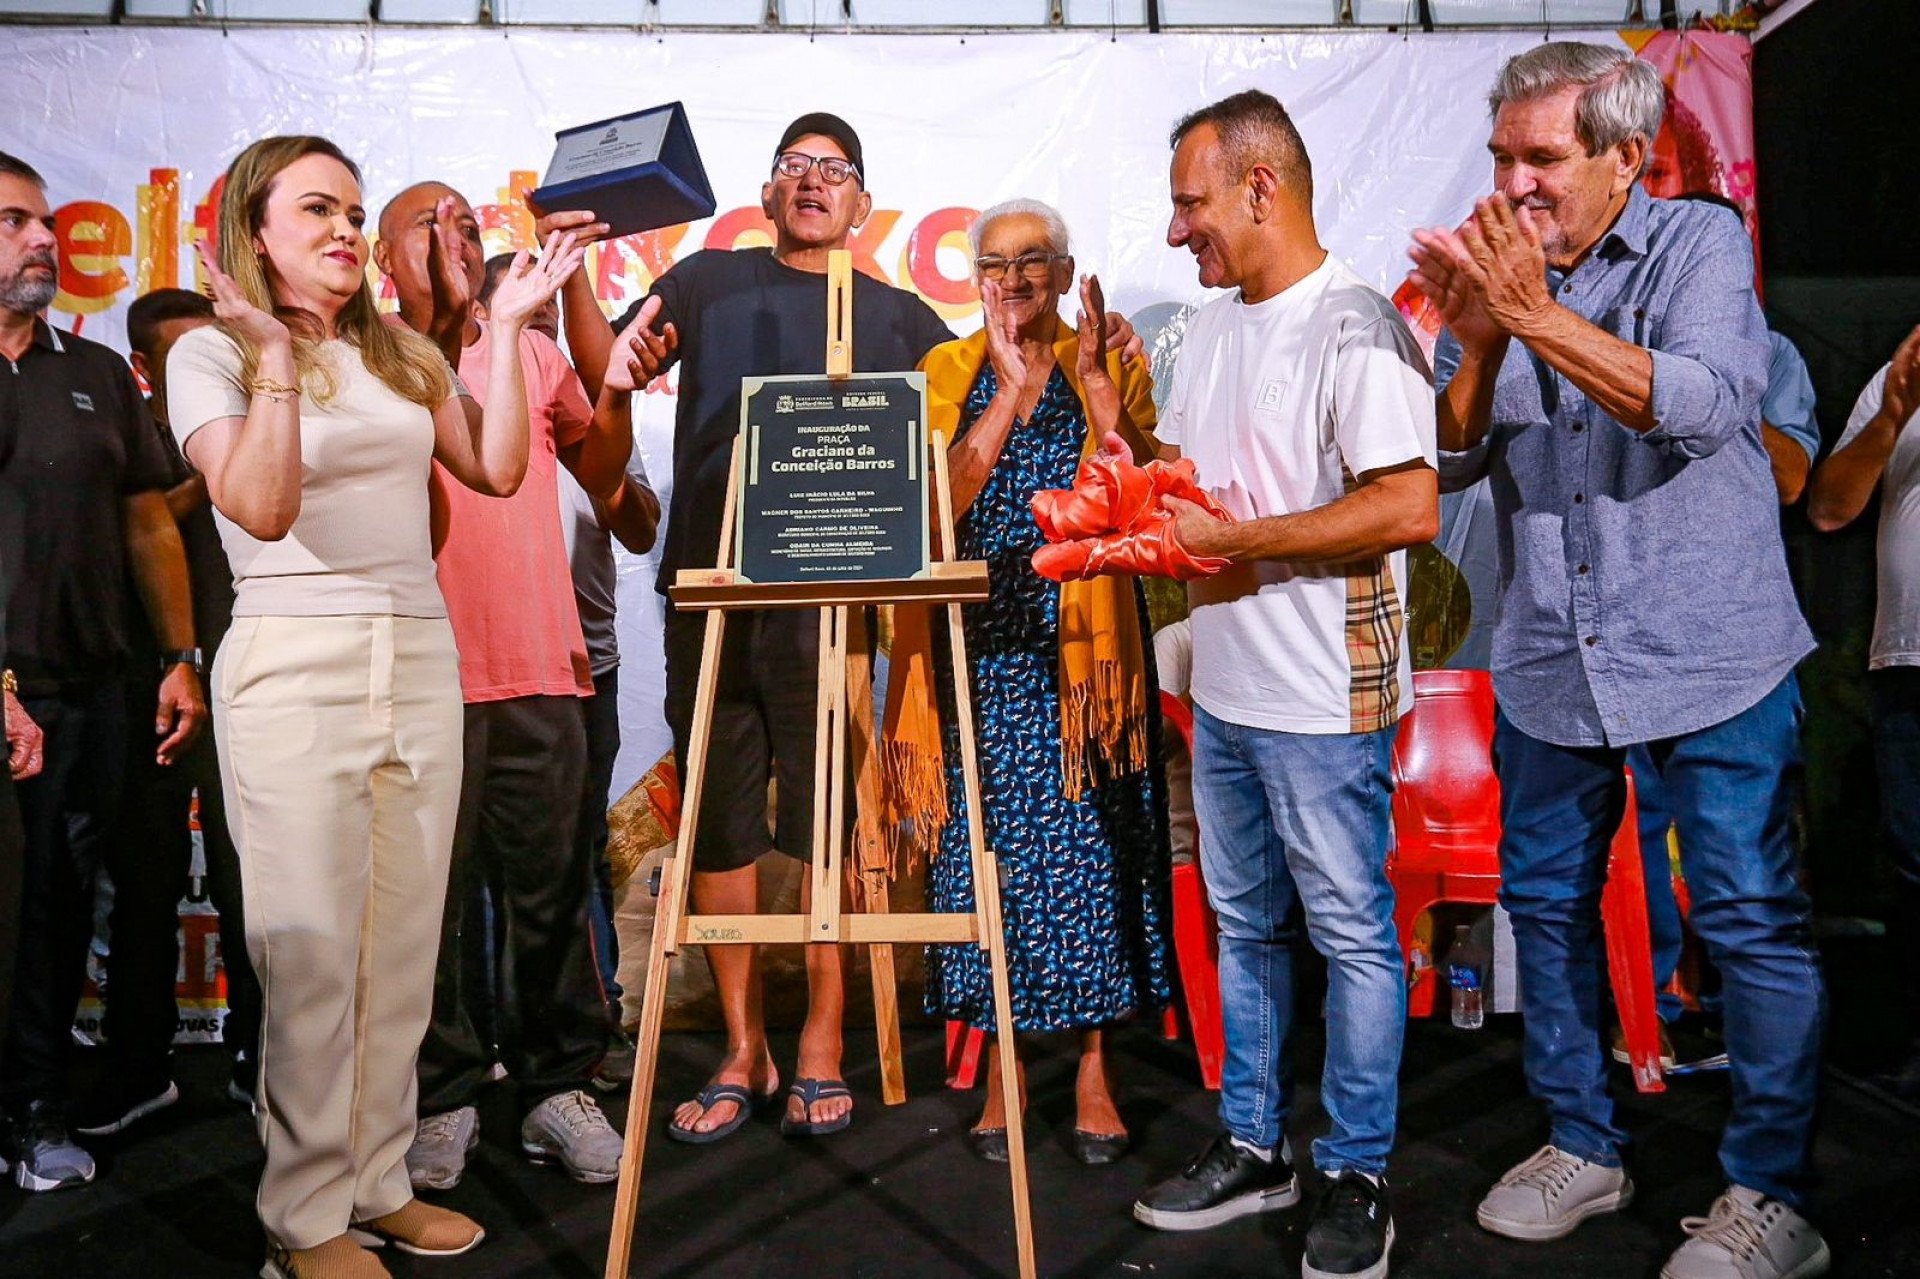 A deputada federal Daniela do Waguinho, a viúva Maria Francisca e familiares, e o prefeito Waguinho descerram a placa de inauguração da praça em Itaipu - Rafael Barreto/PMBR